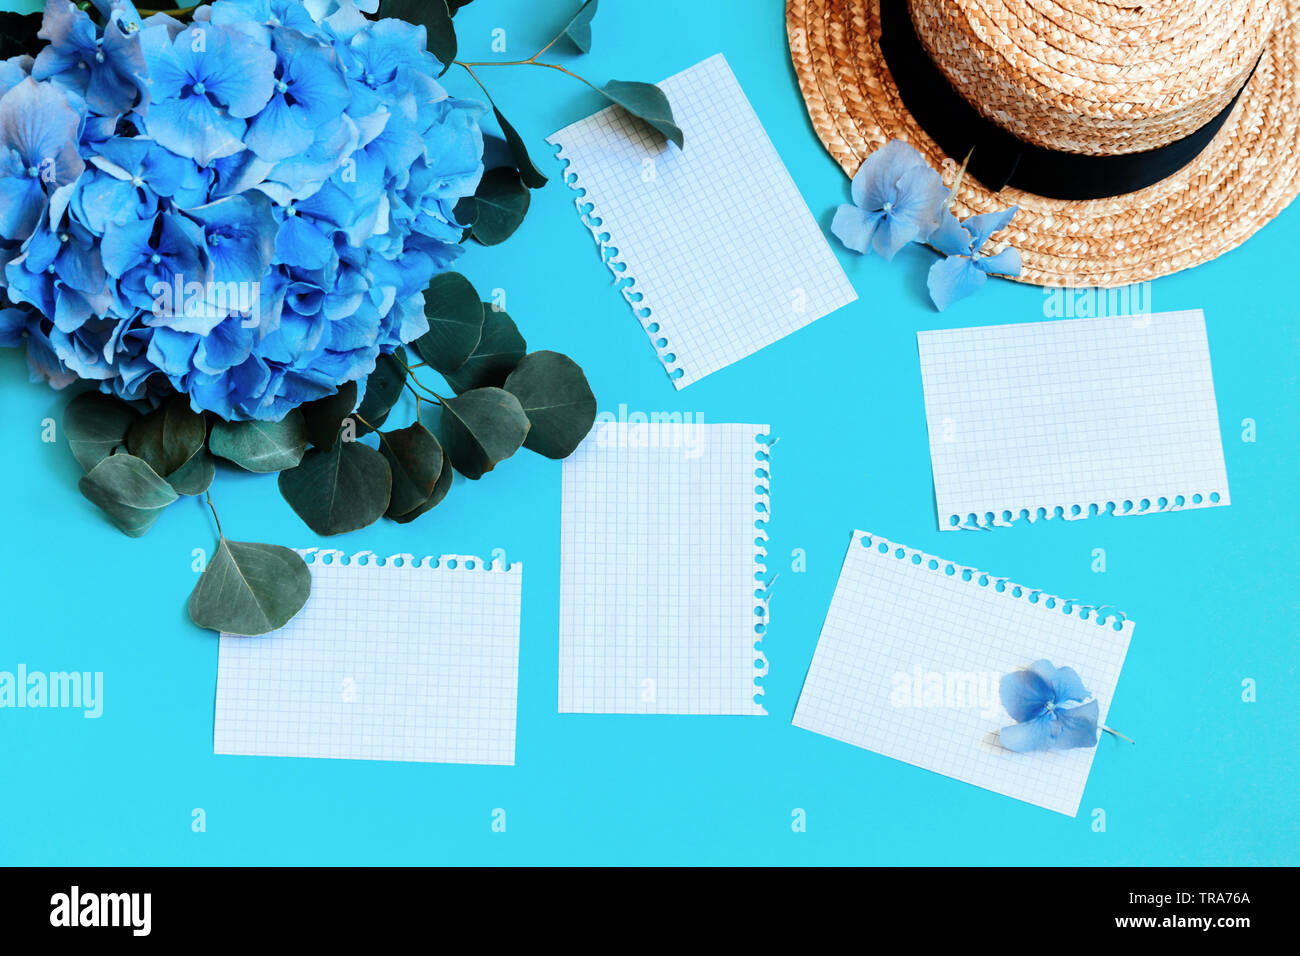 Blumenstrauß Blaue Hortensie auf einem blauen Hintergrund mit weißen getrennt Seiten und Stroh Sommer Hut. Platz kopieren Stockfoto